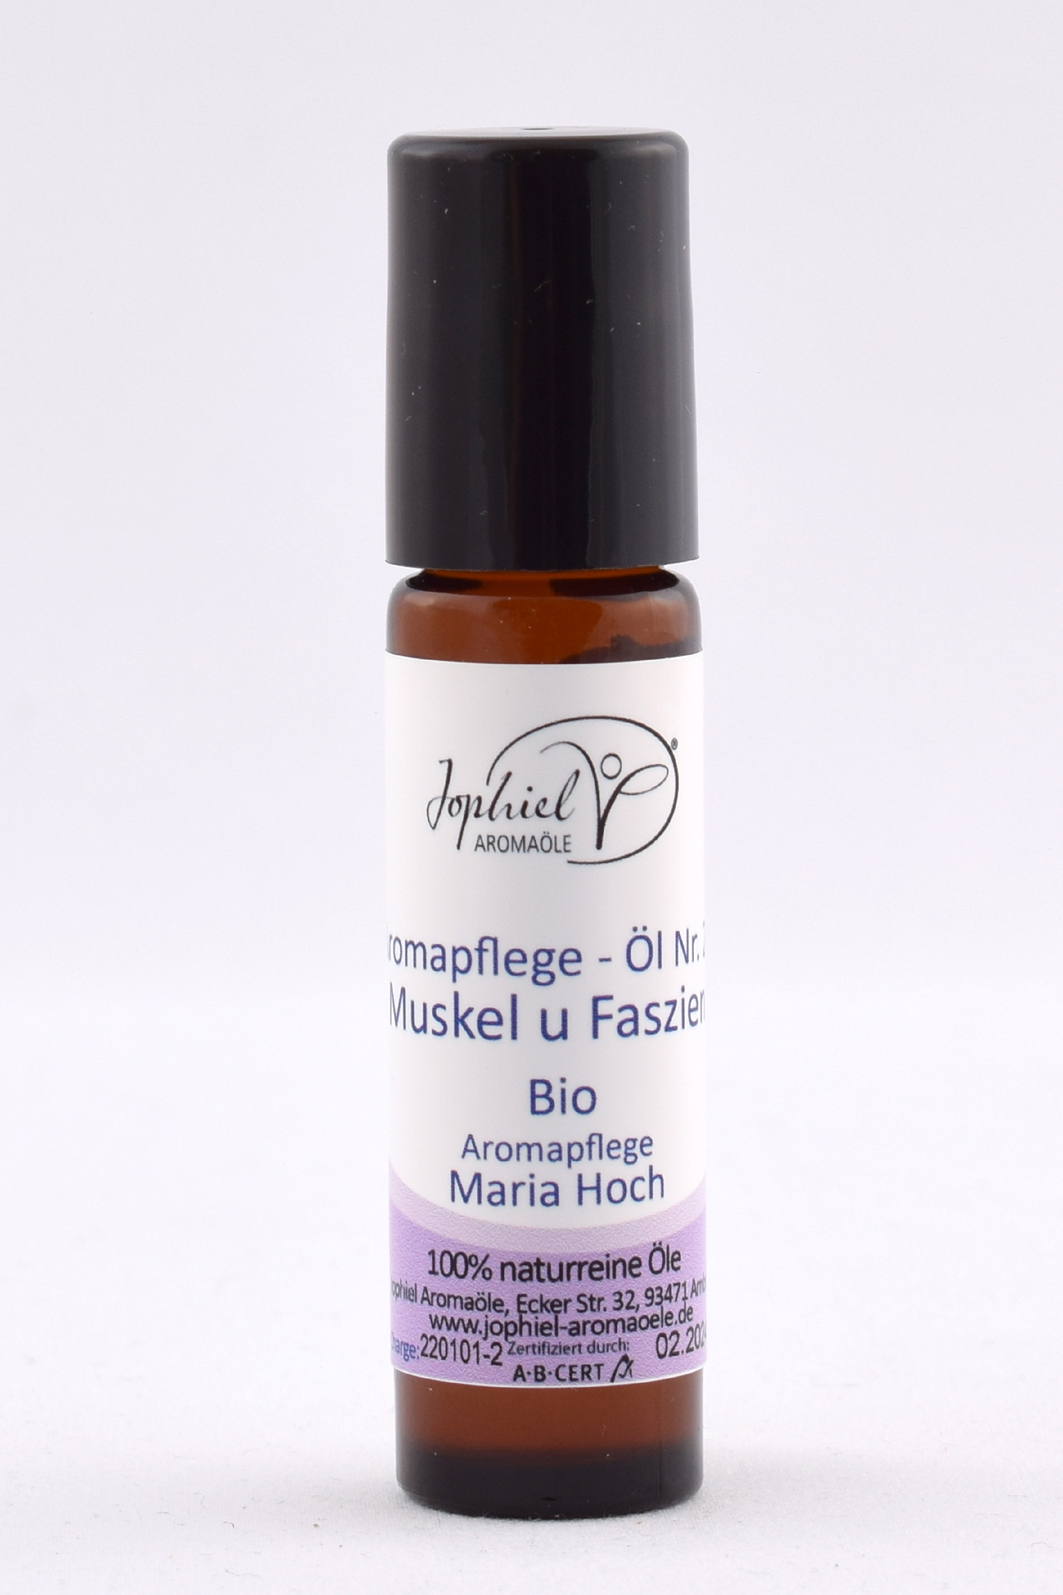 Aromapflege-Öl Nr. 02  Muskeln und Faszien im Roll-on 10 ml  Bio 